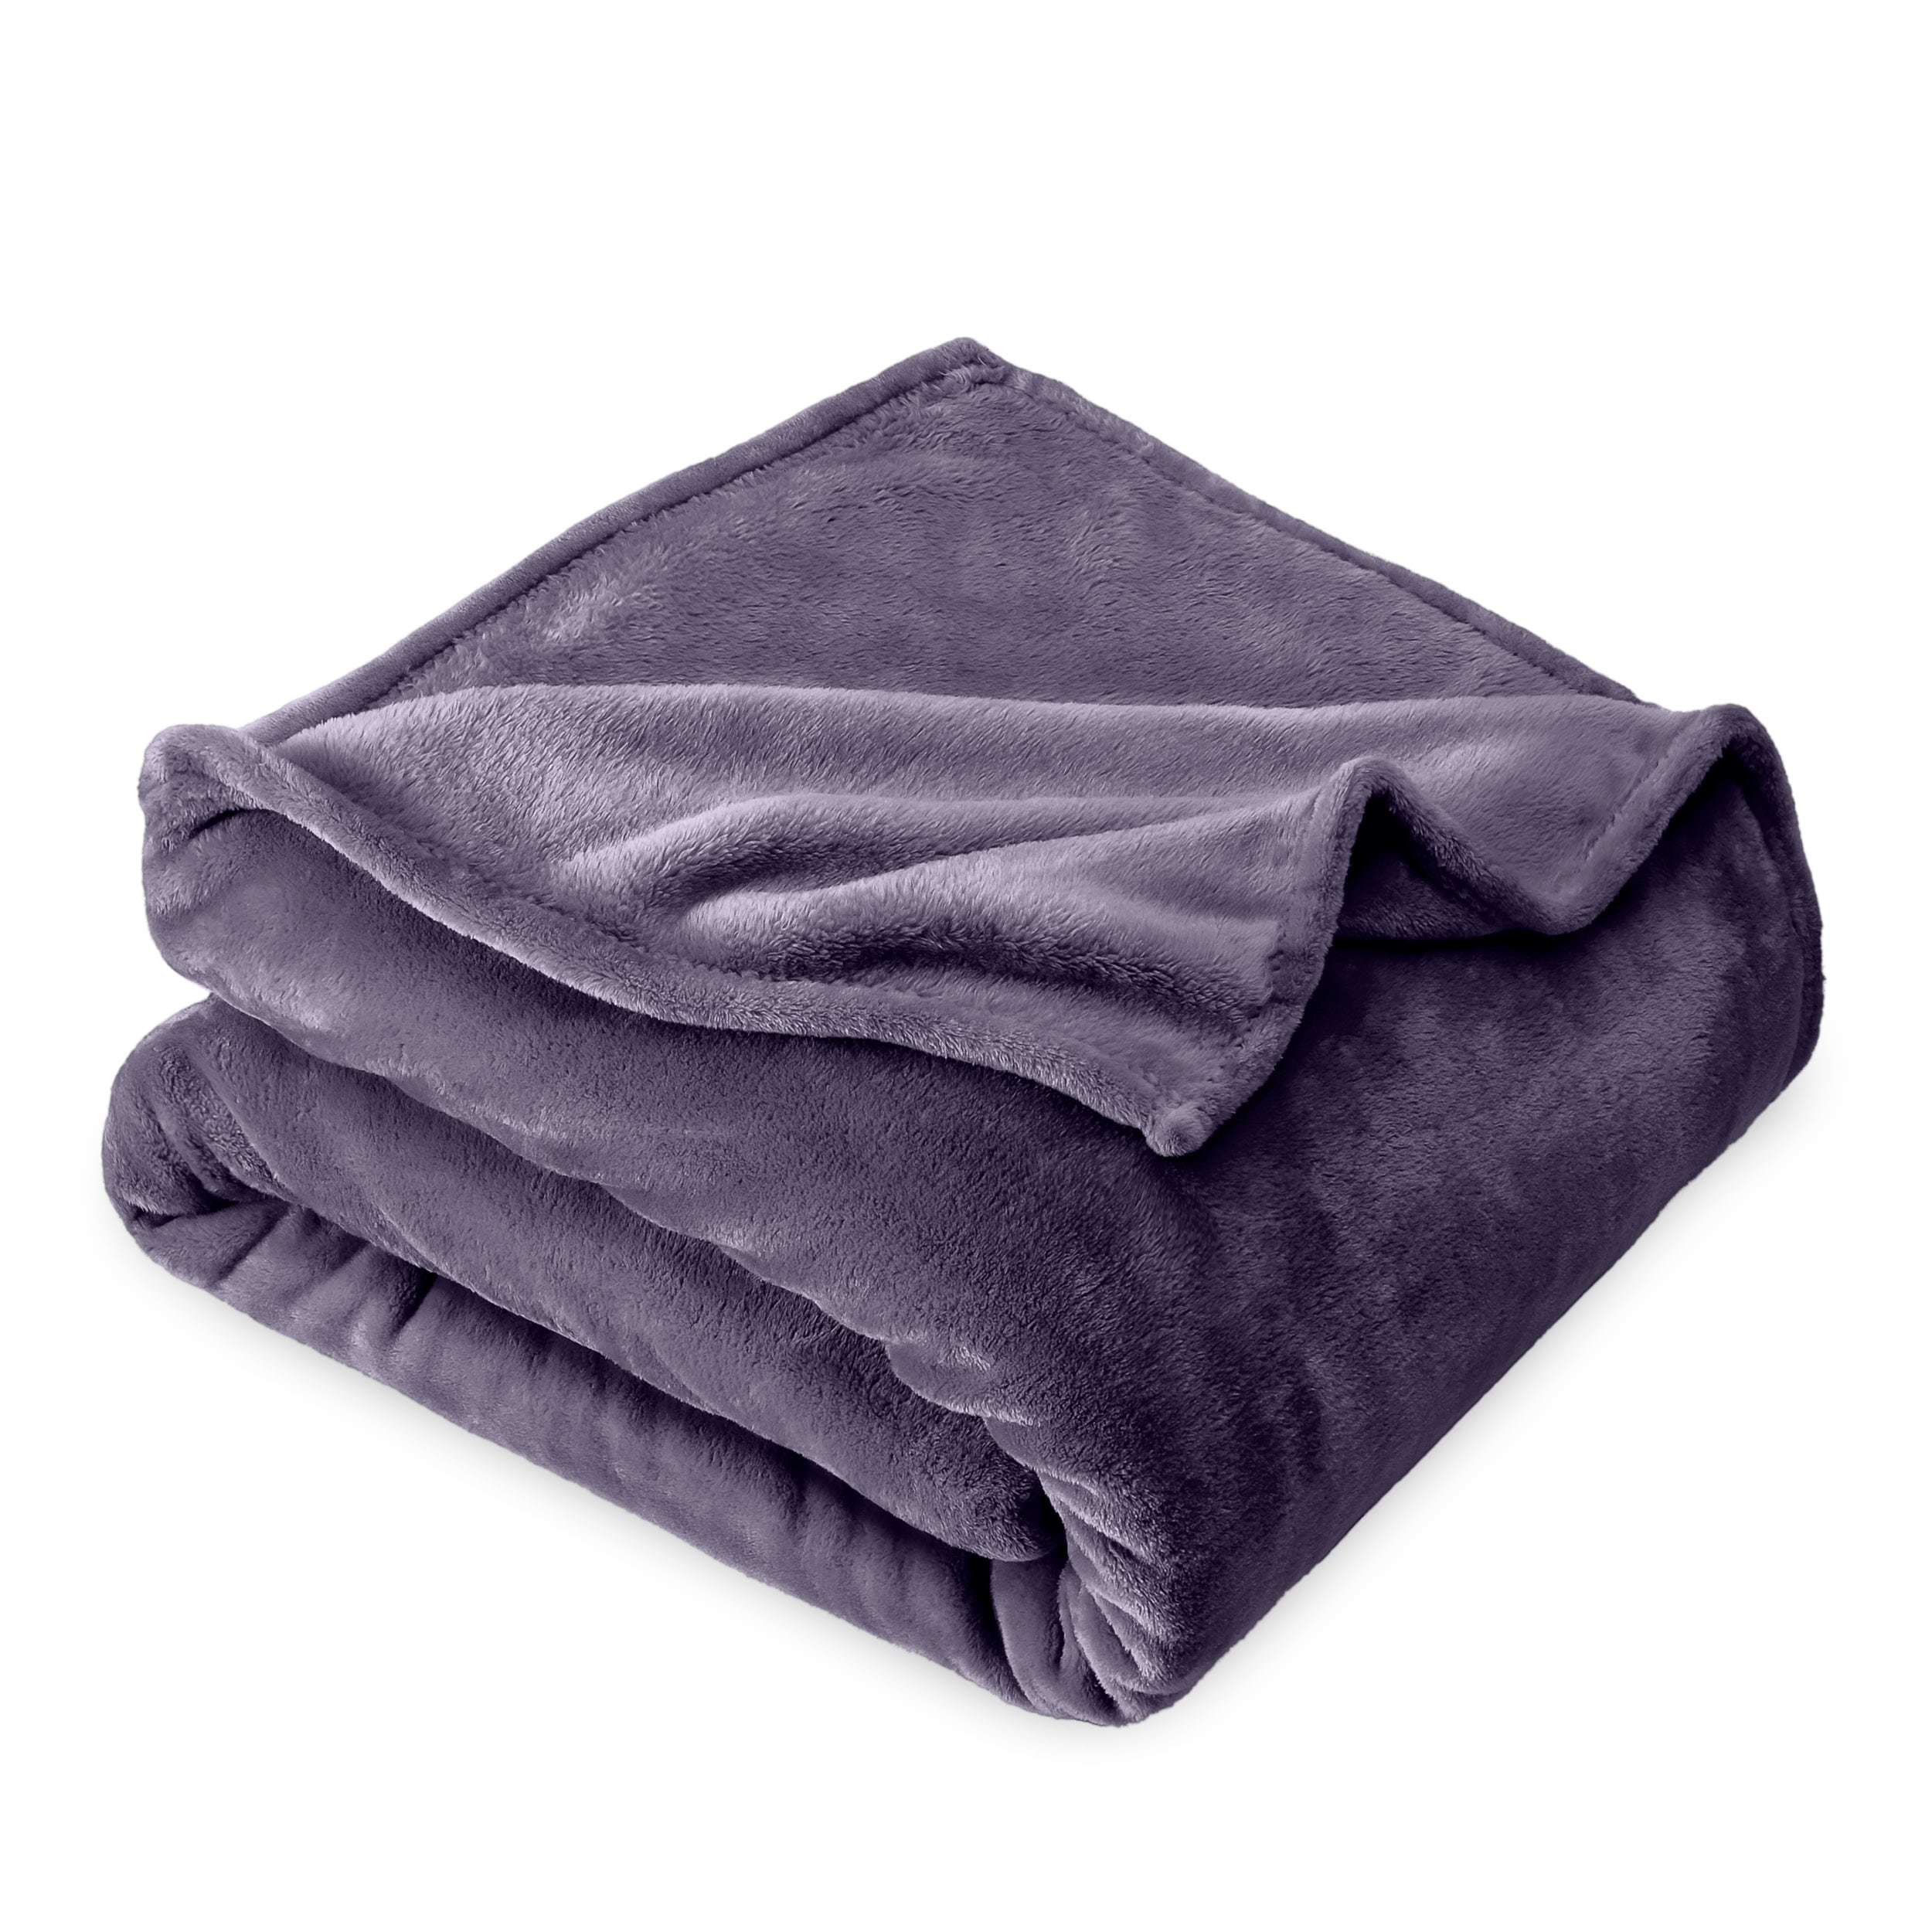 Odyssey Ultra Plush & Soft Fleece Blanket - Beige